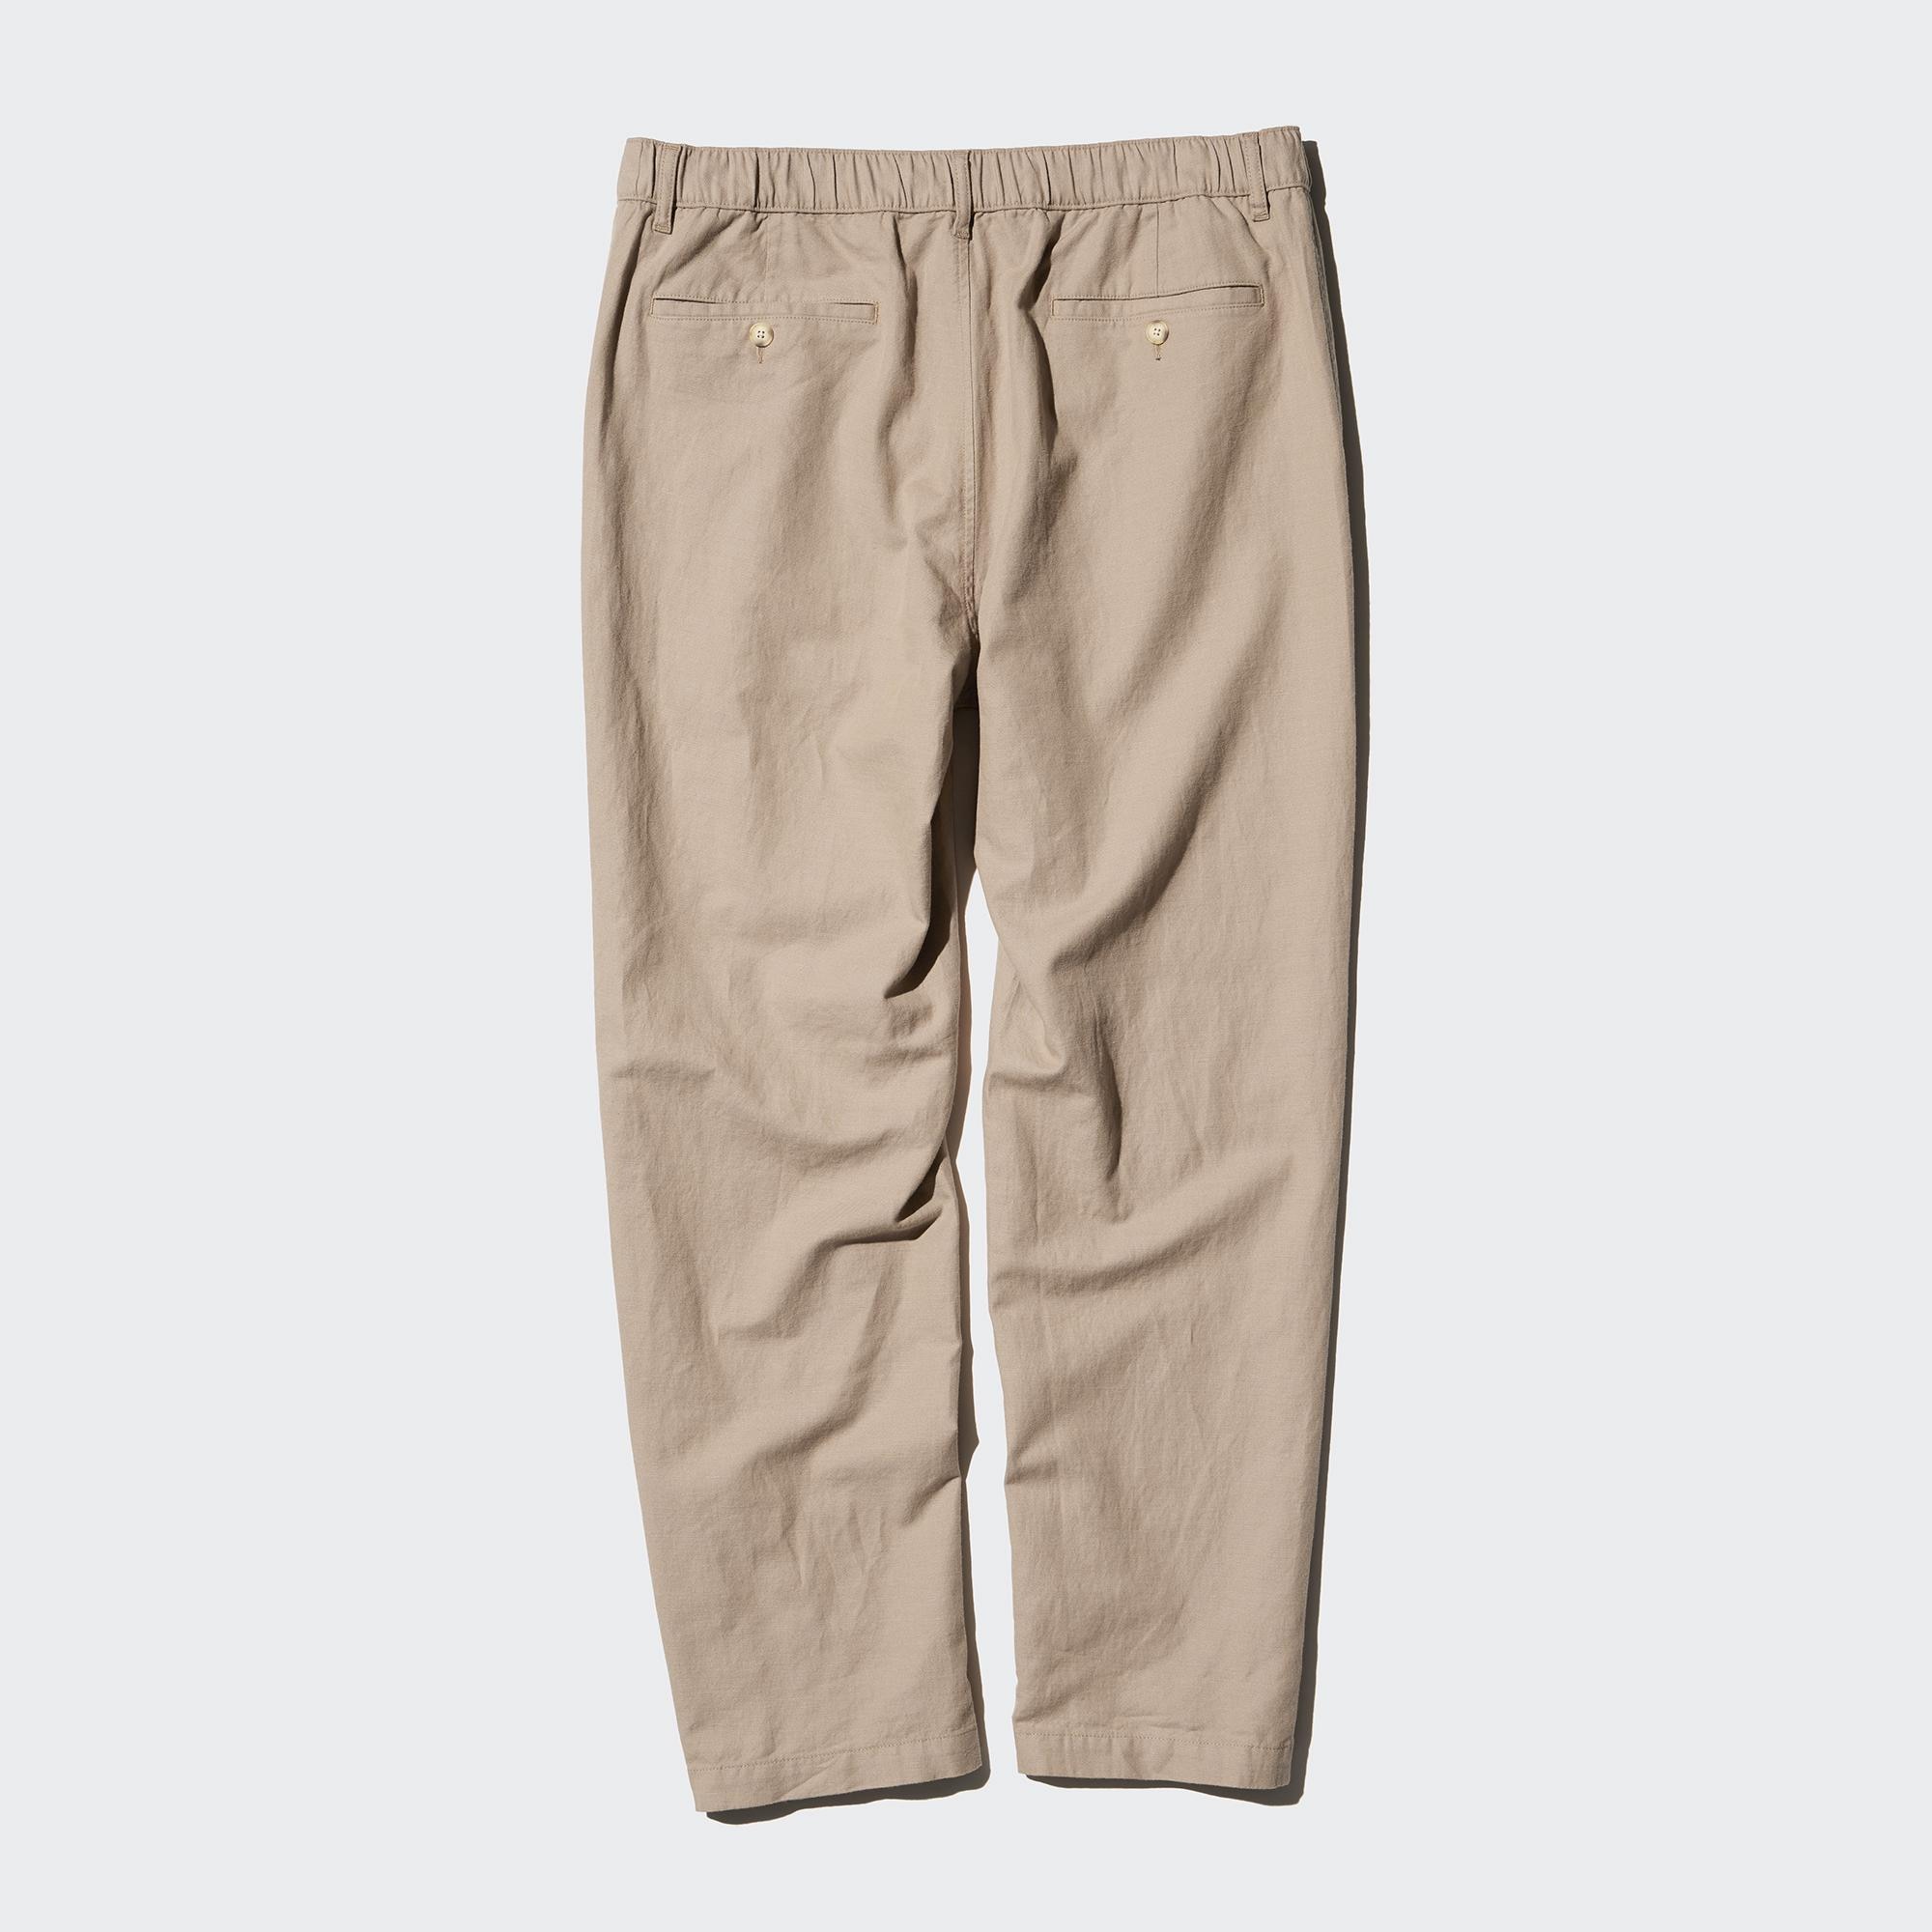 Linen-Blend Relaxed Pants